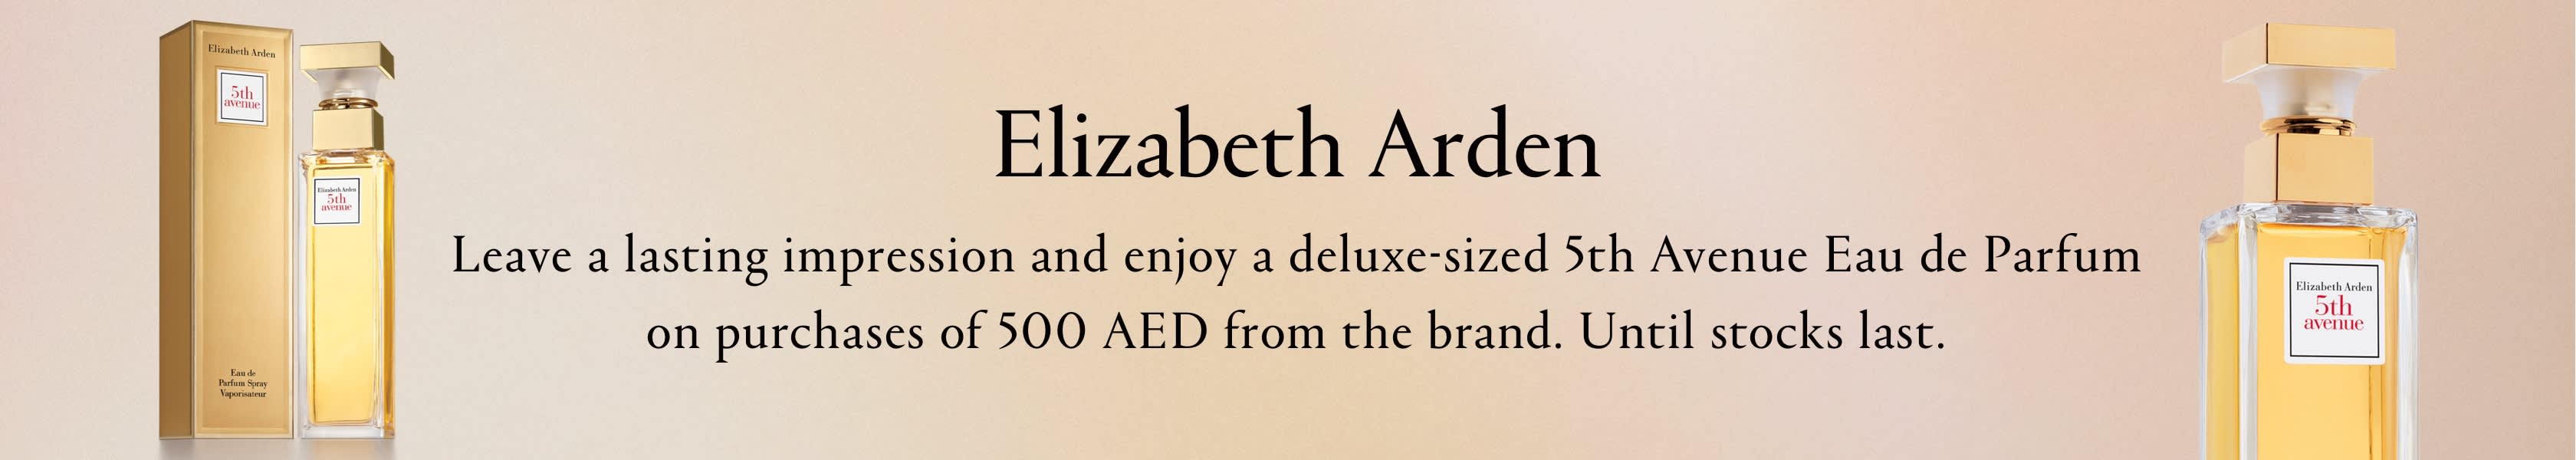 Elizabeth Arden GWP PDP+PLP Web EN AED WK17